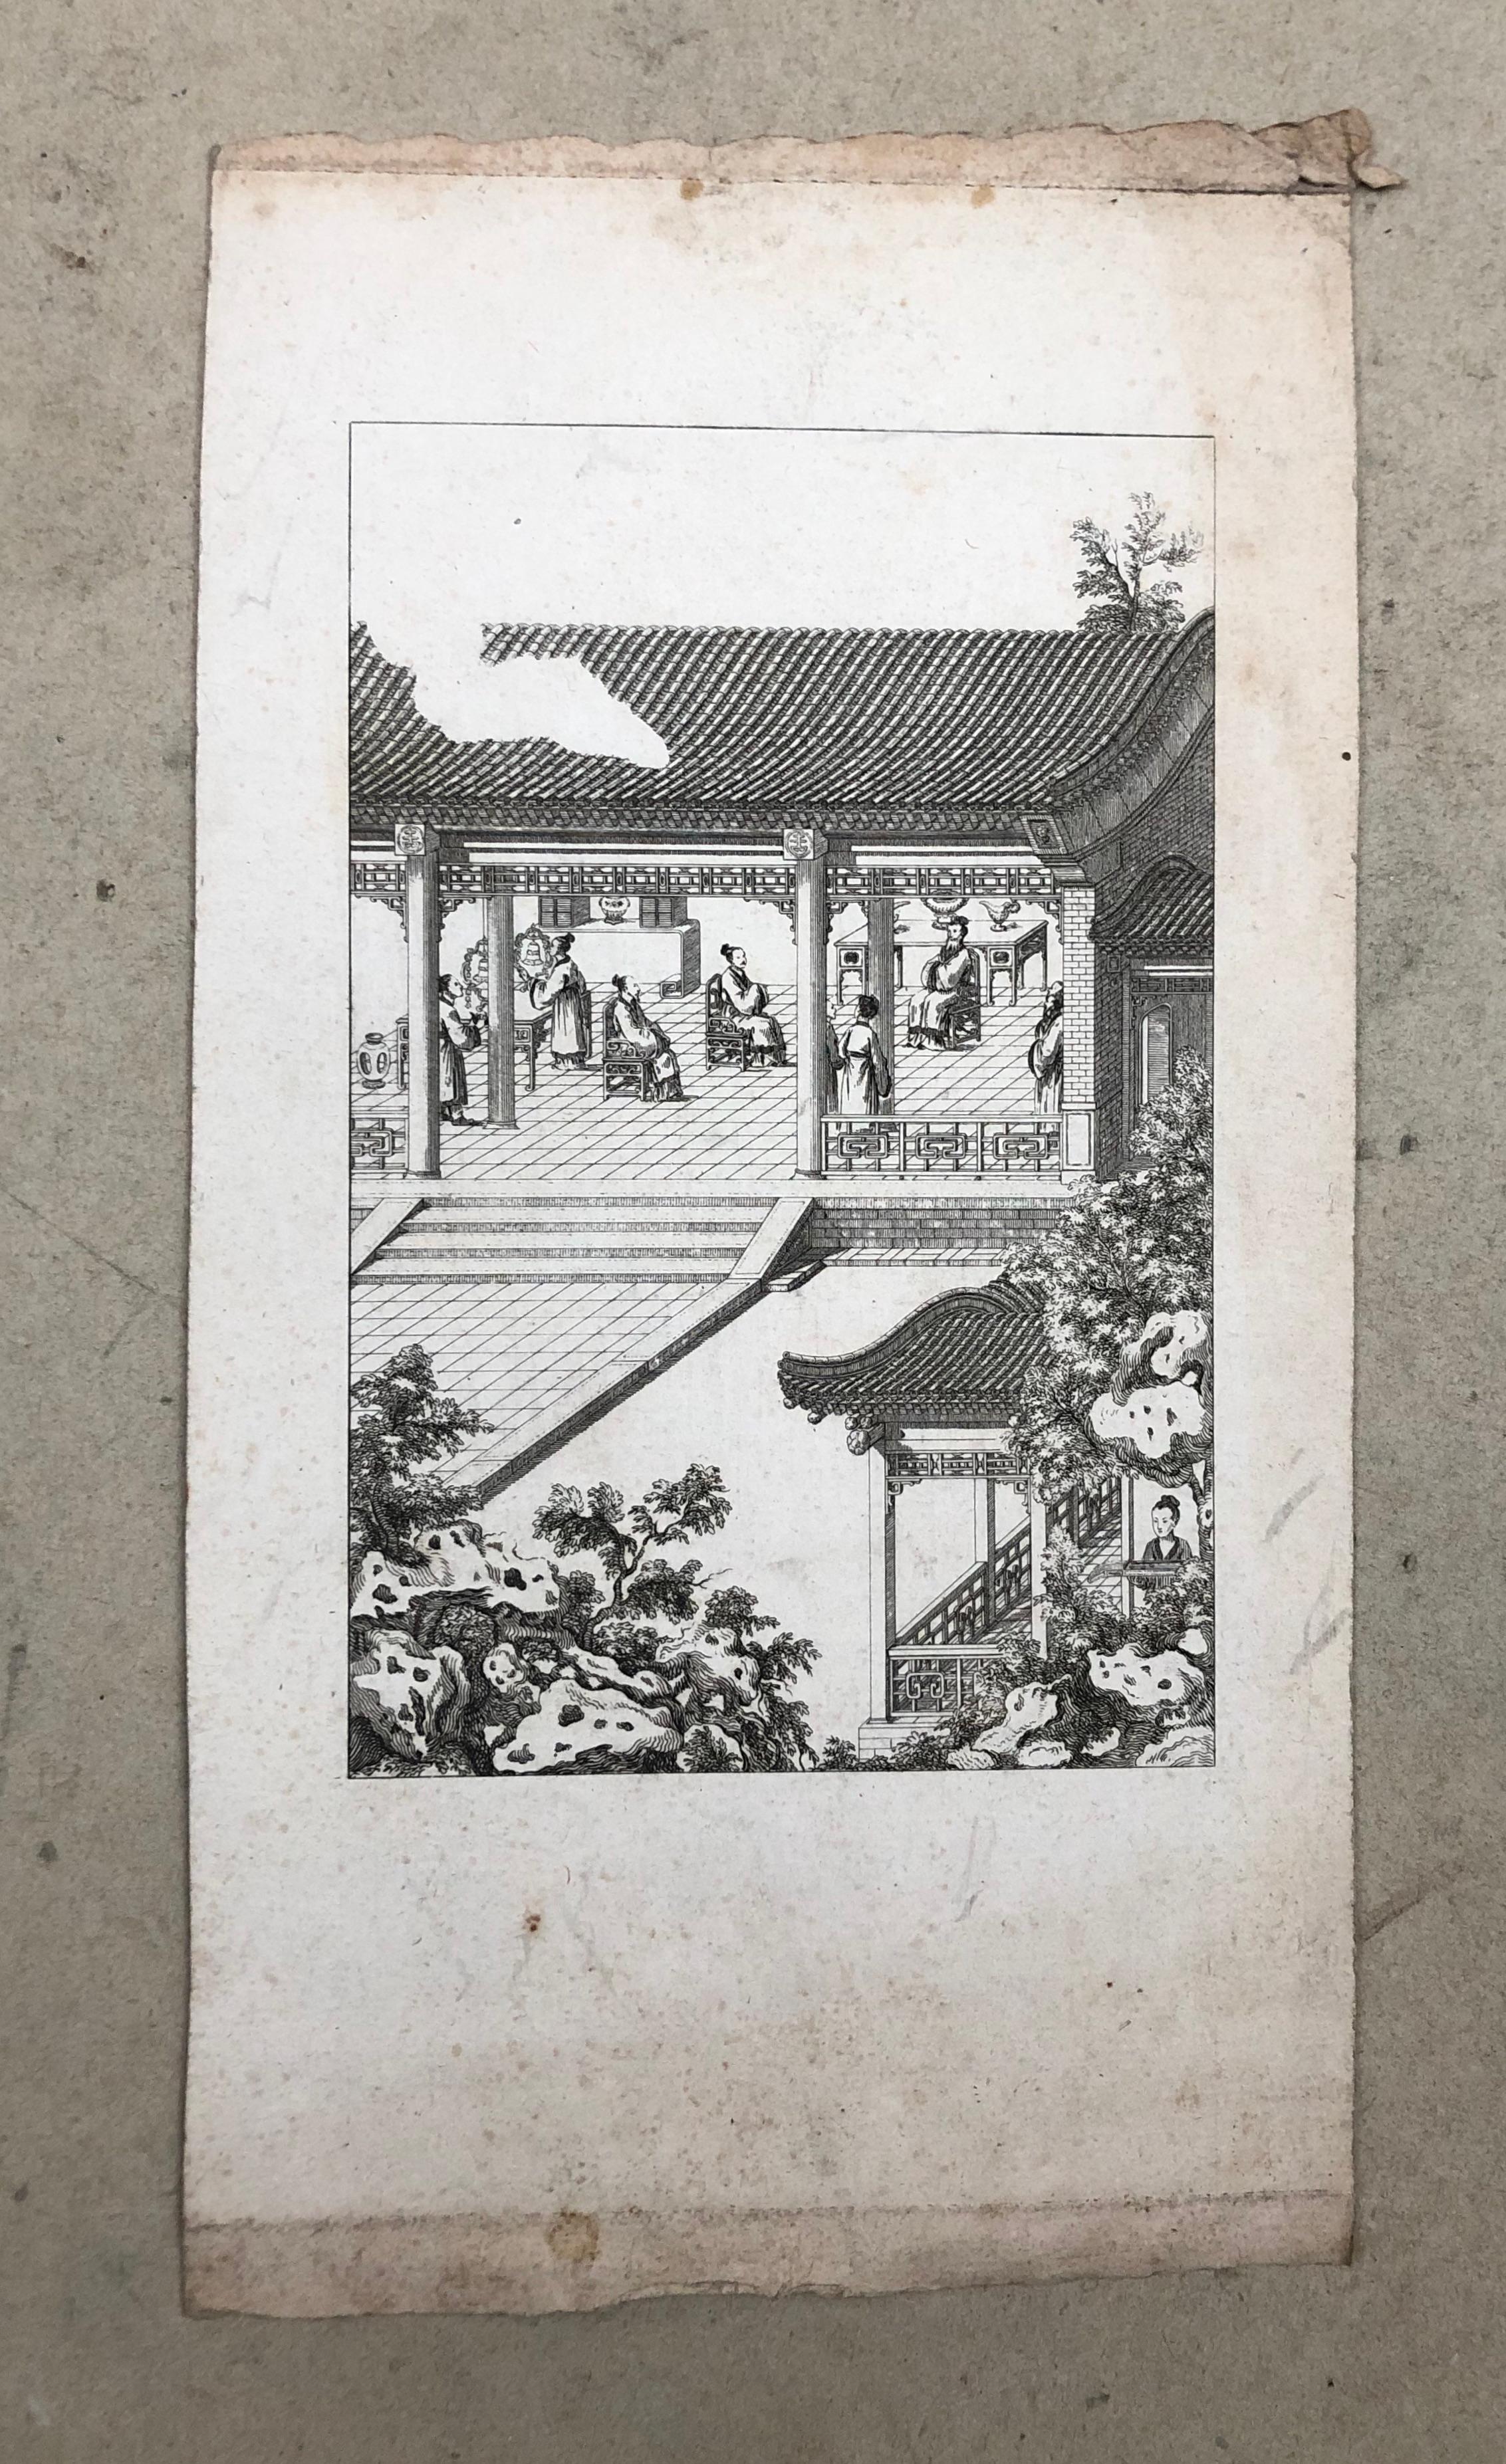 Scènes de la vie chinoise.
6 gravures de la fin du 18e siècle ou du début du 19e siècle.
Taches et taches de rousseur.
Foldes ou petites déchirures dans les marges pour certaines planches.
De 24 x 17 cm à 30 x 16 cm